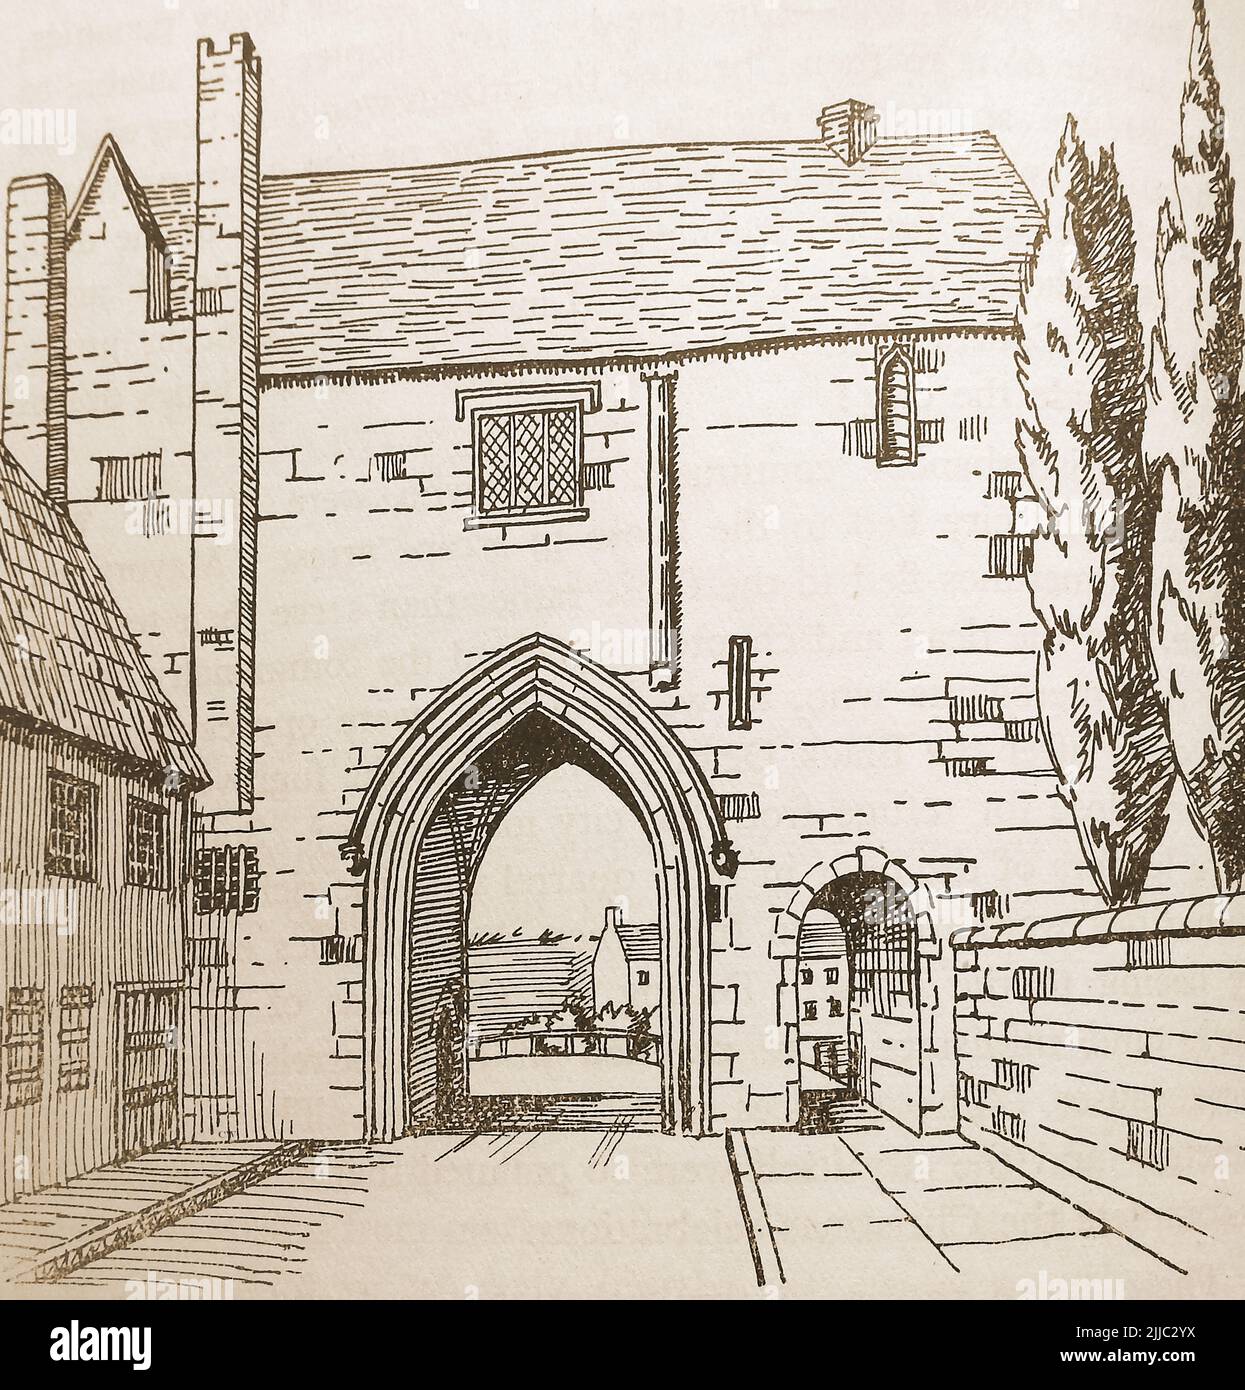 Geschichte von Lincoln, England - eine alte Skizze des alten Registers und seines gewölbten Tores Stockfoto